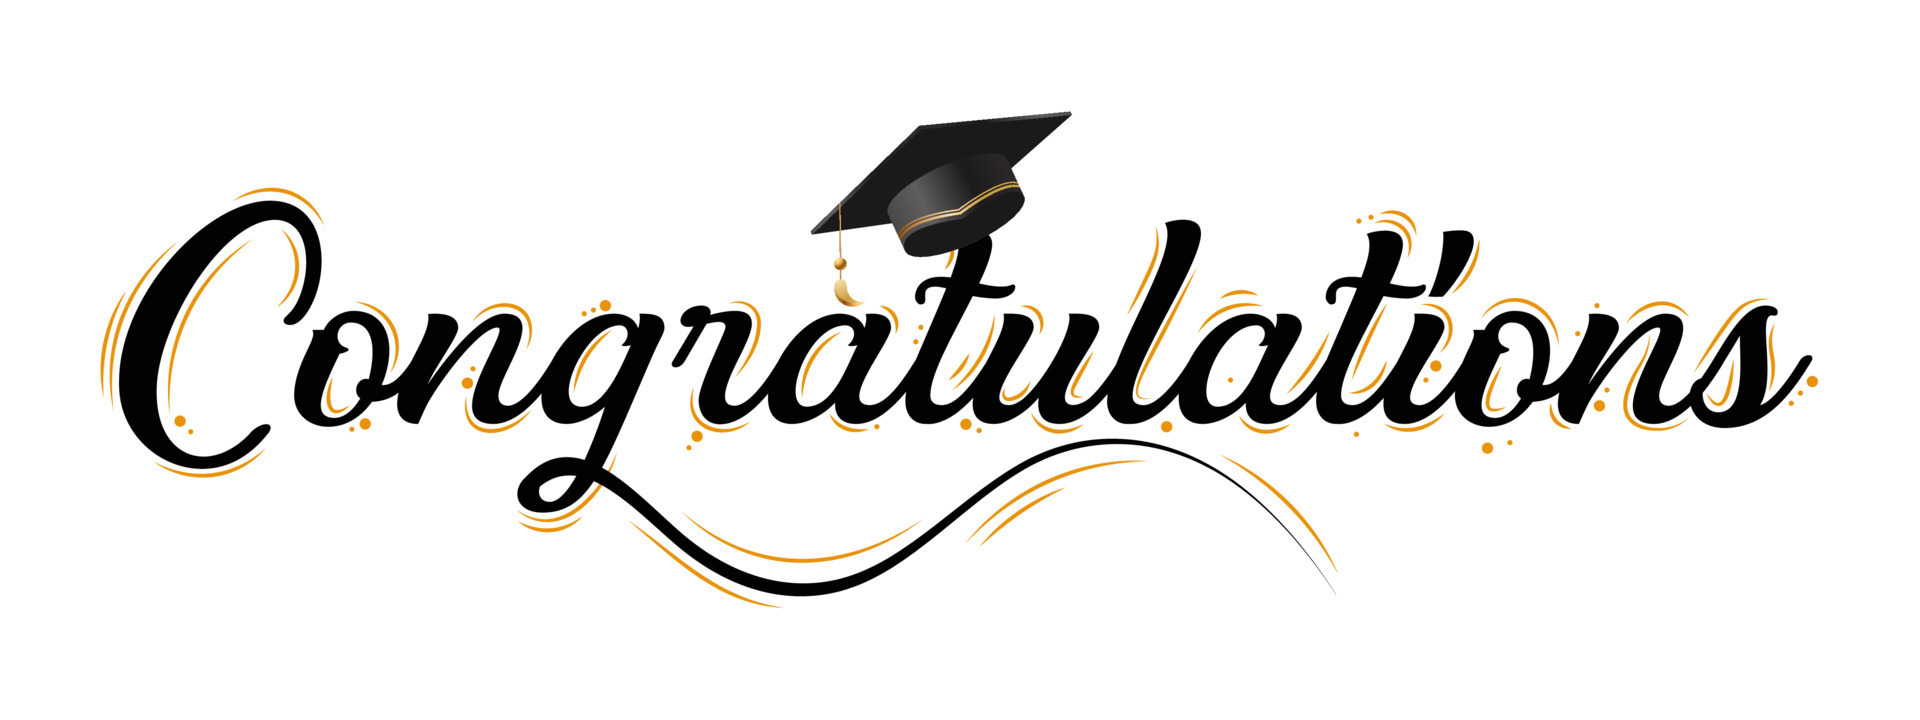 Congratulations Greeting Sign Congrats Graduated Congratulations